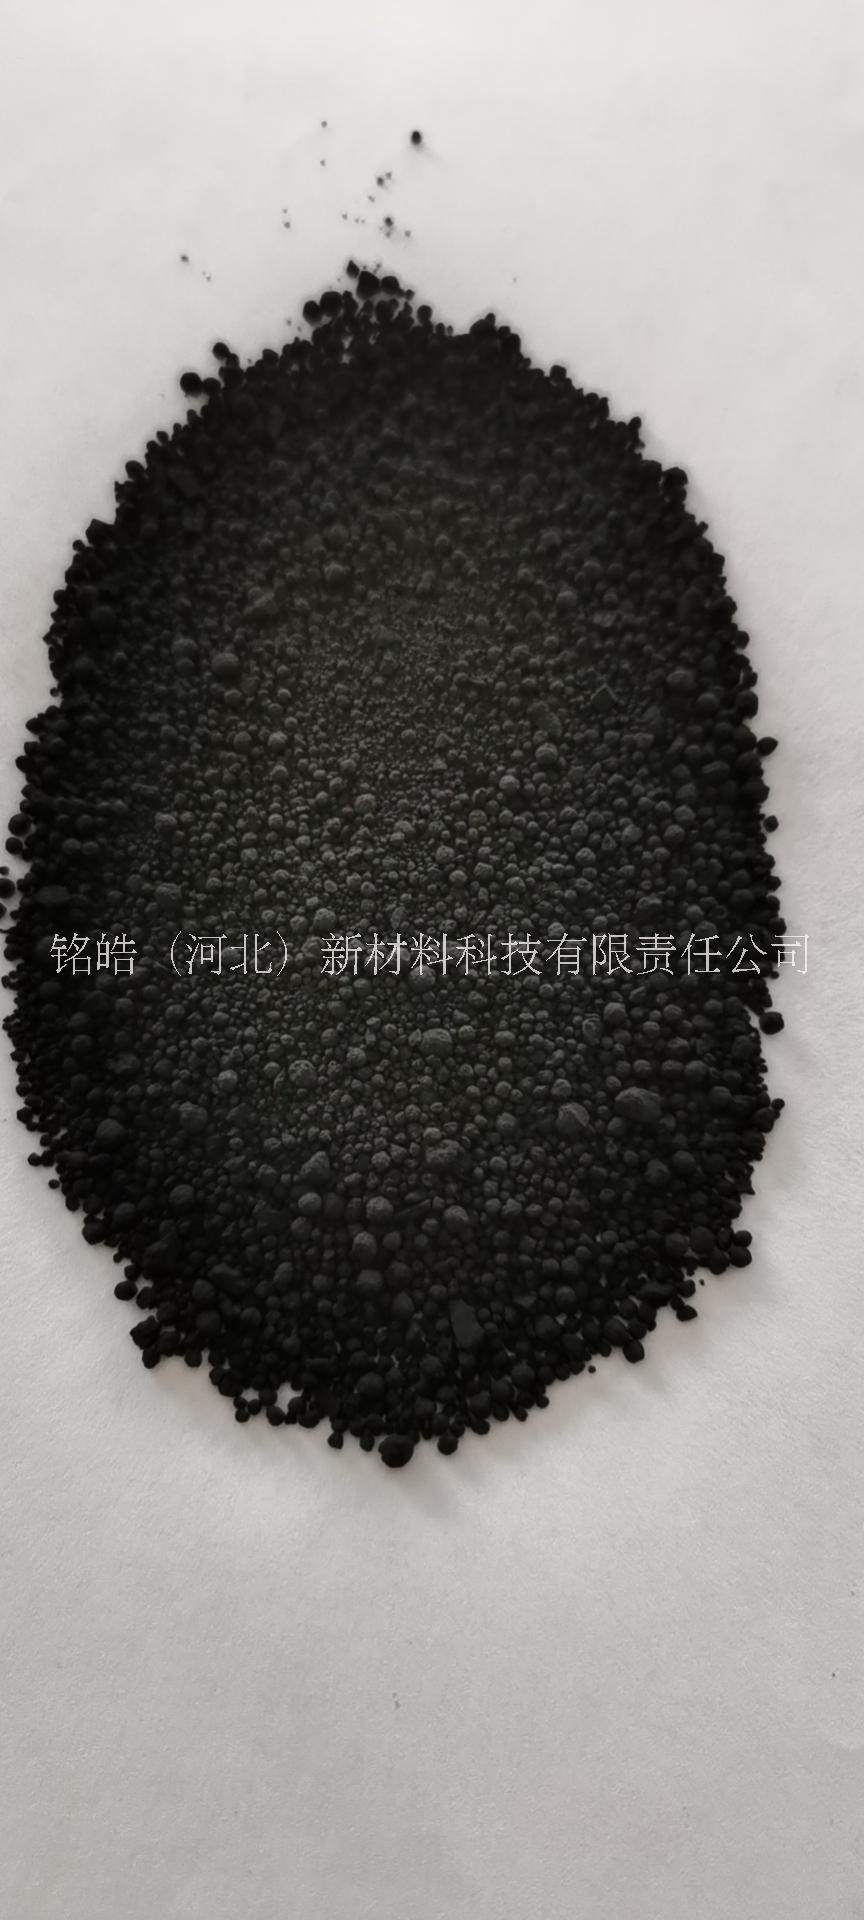 色素炭黑颗粒N330 橡胶碳黑颗粒现货出售